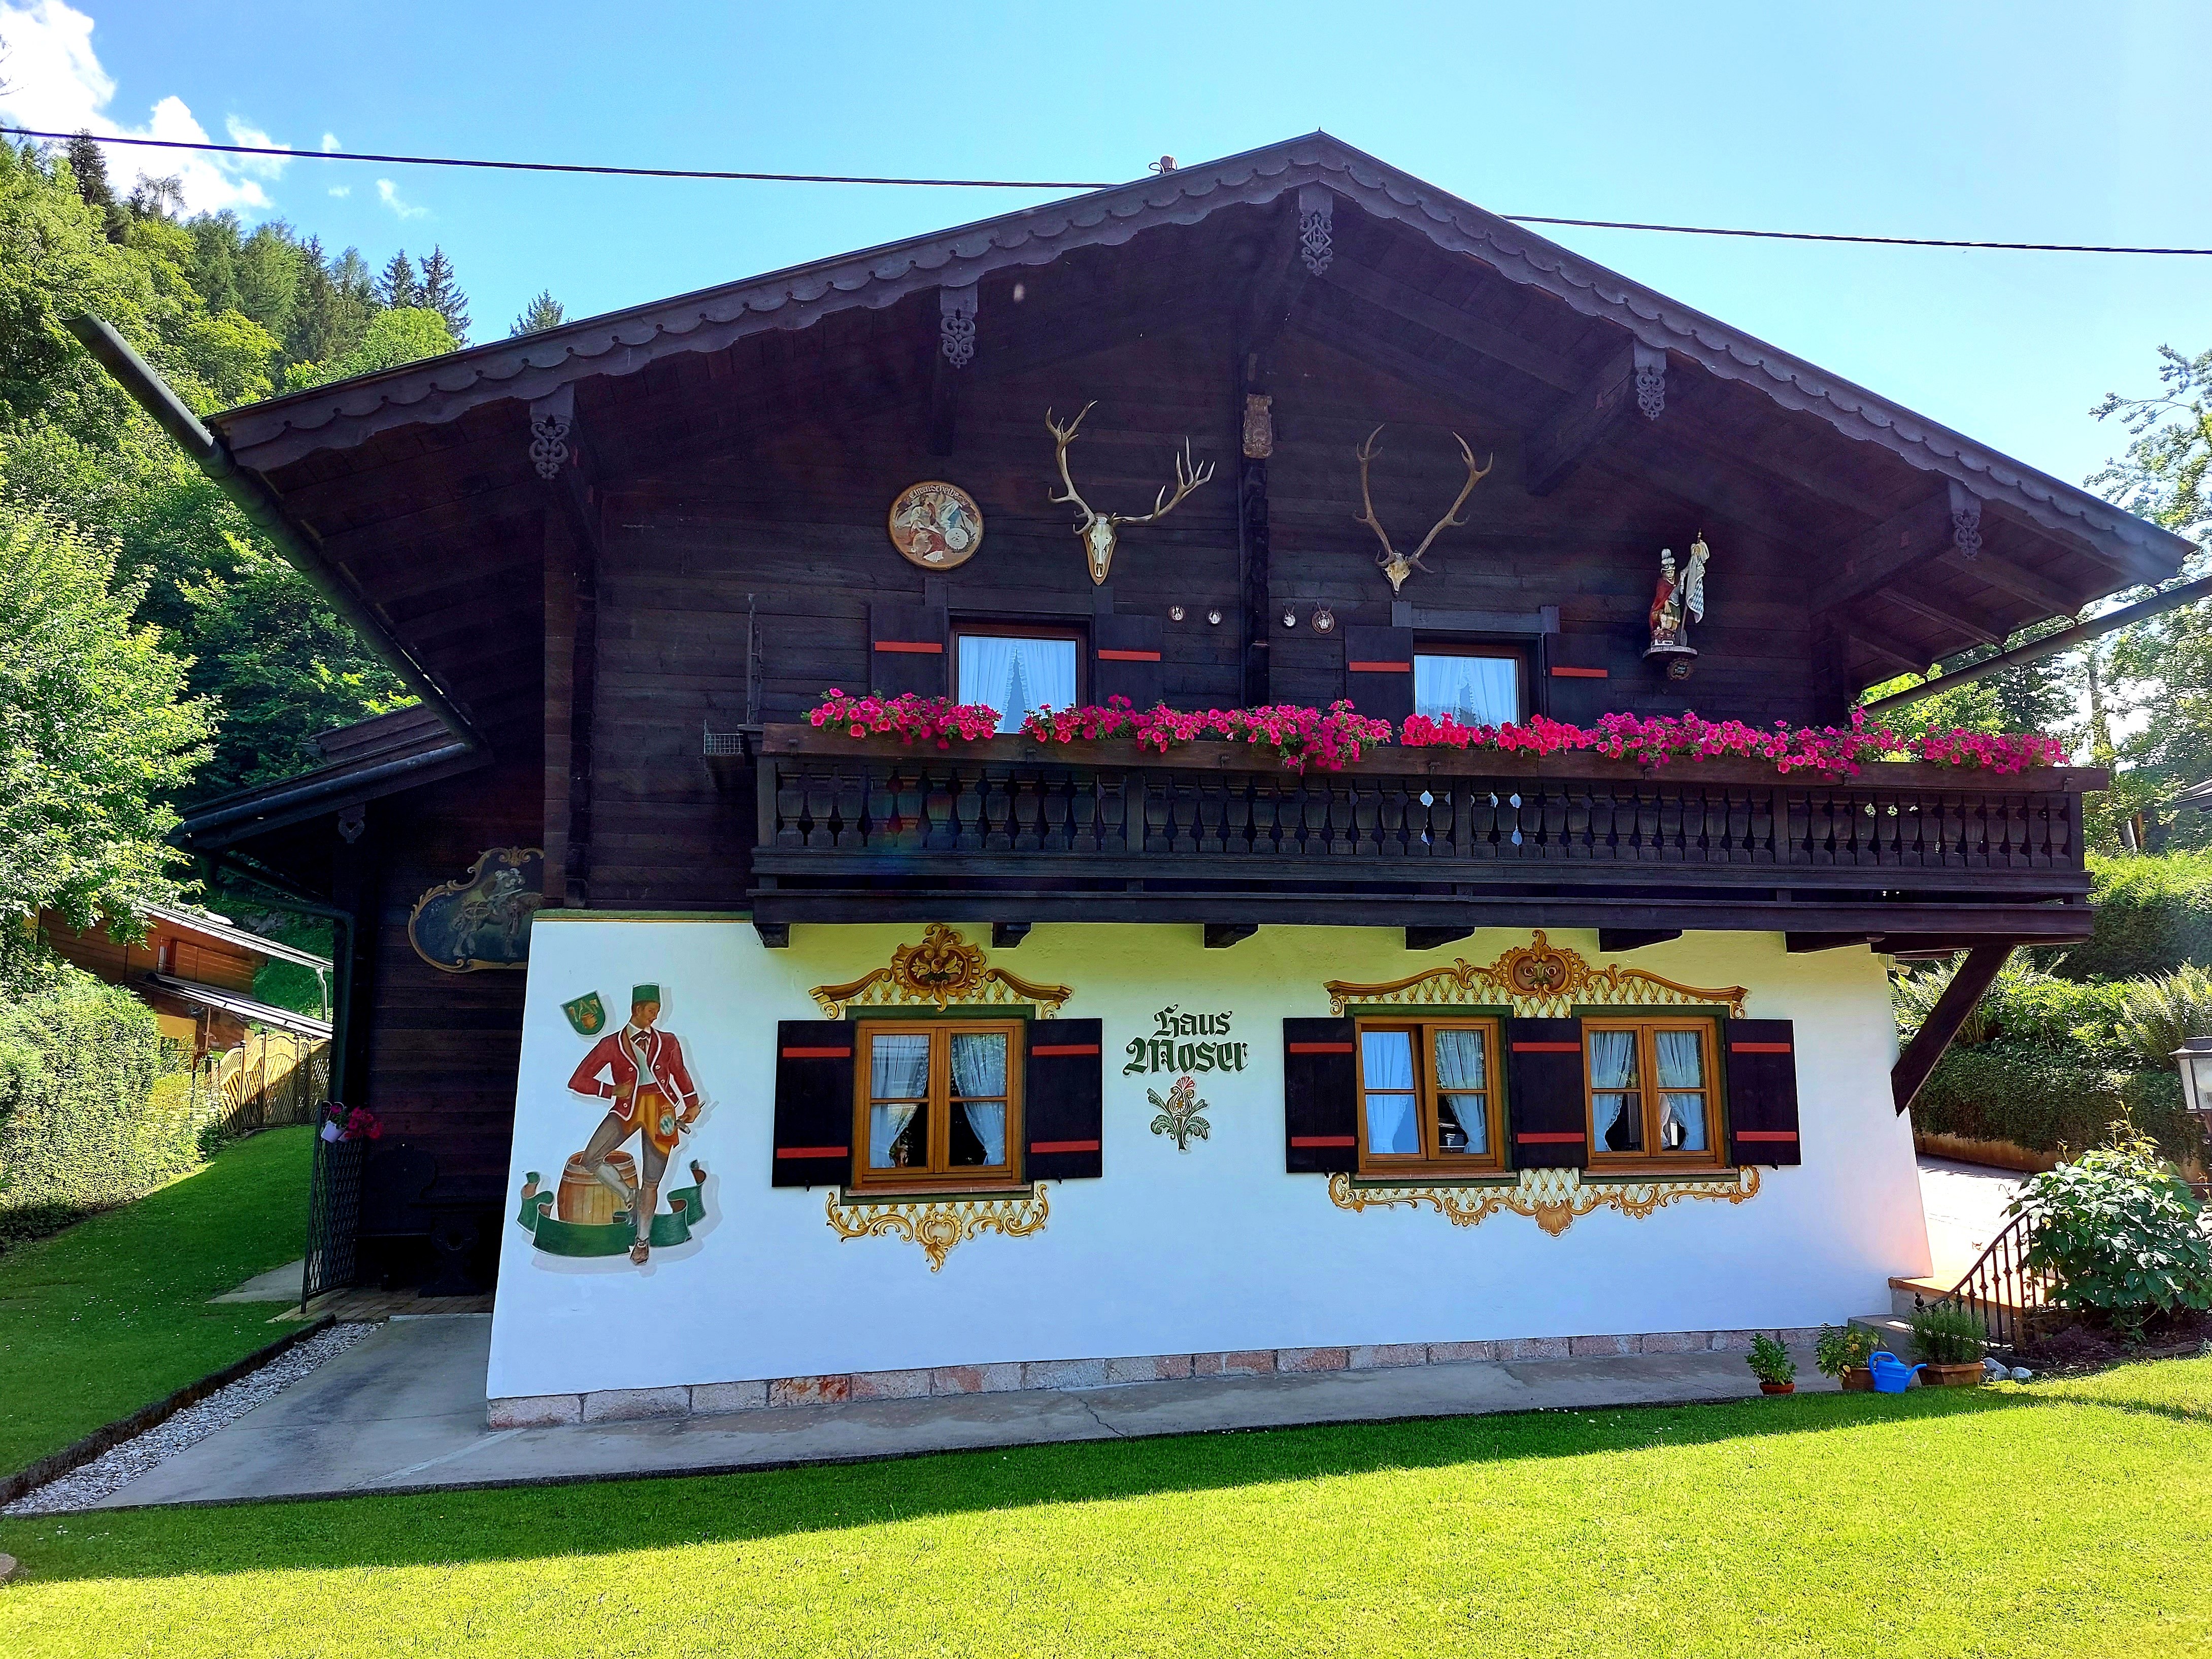 Ferienwohnungen Haus Moser (DE Berchtesgaden). Fer Ferienwohnung in Europa